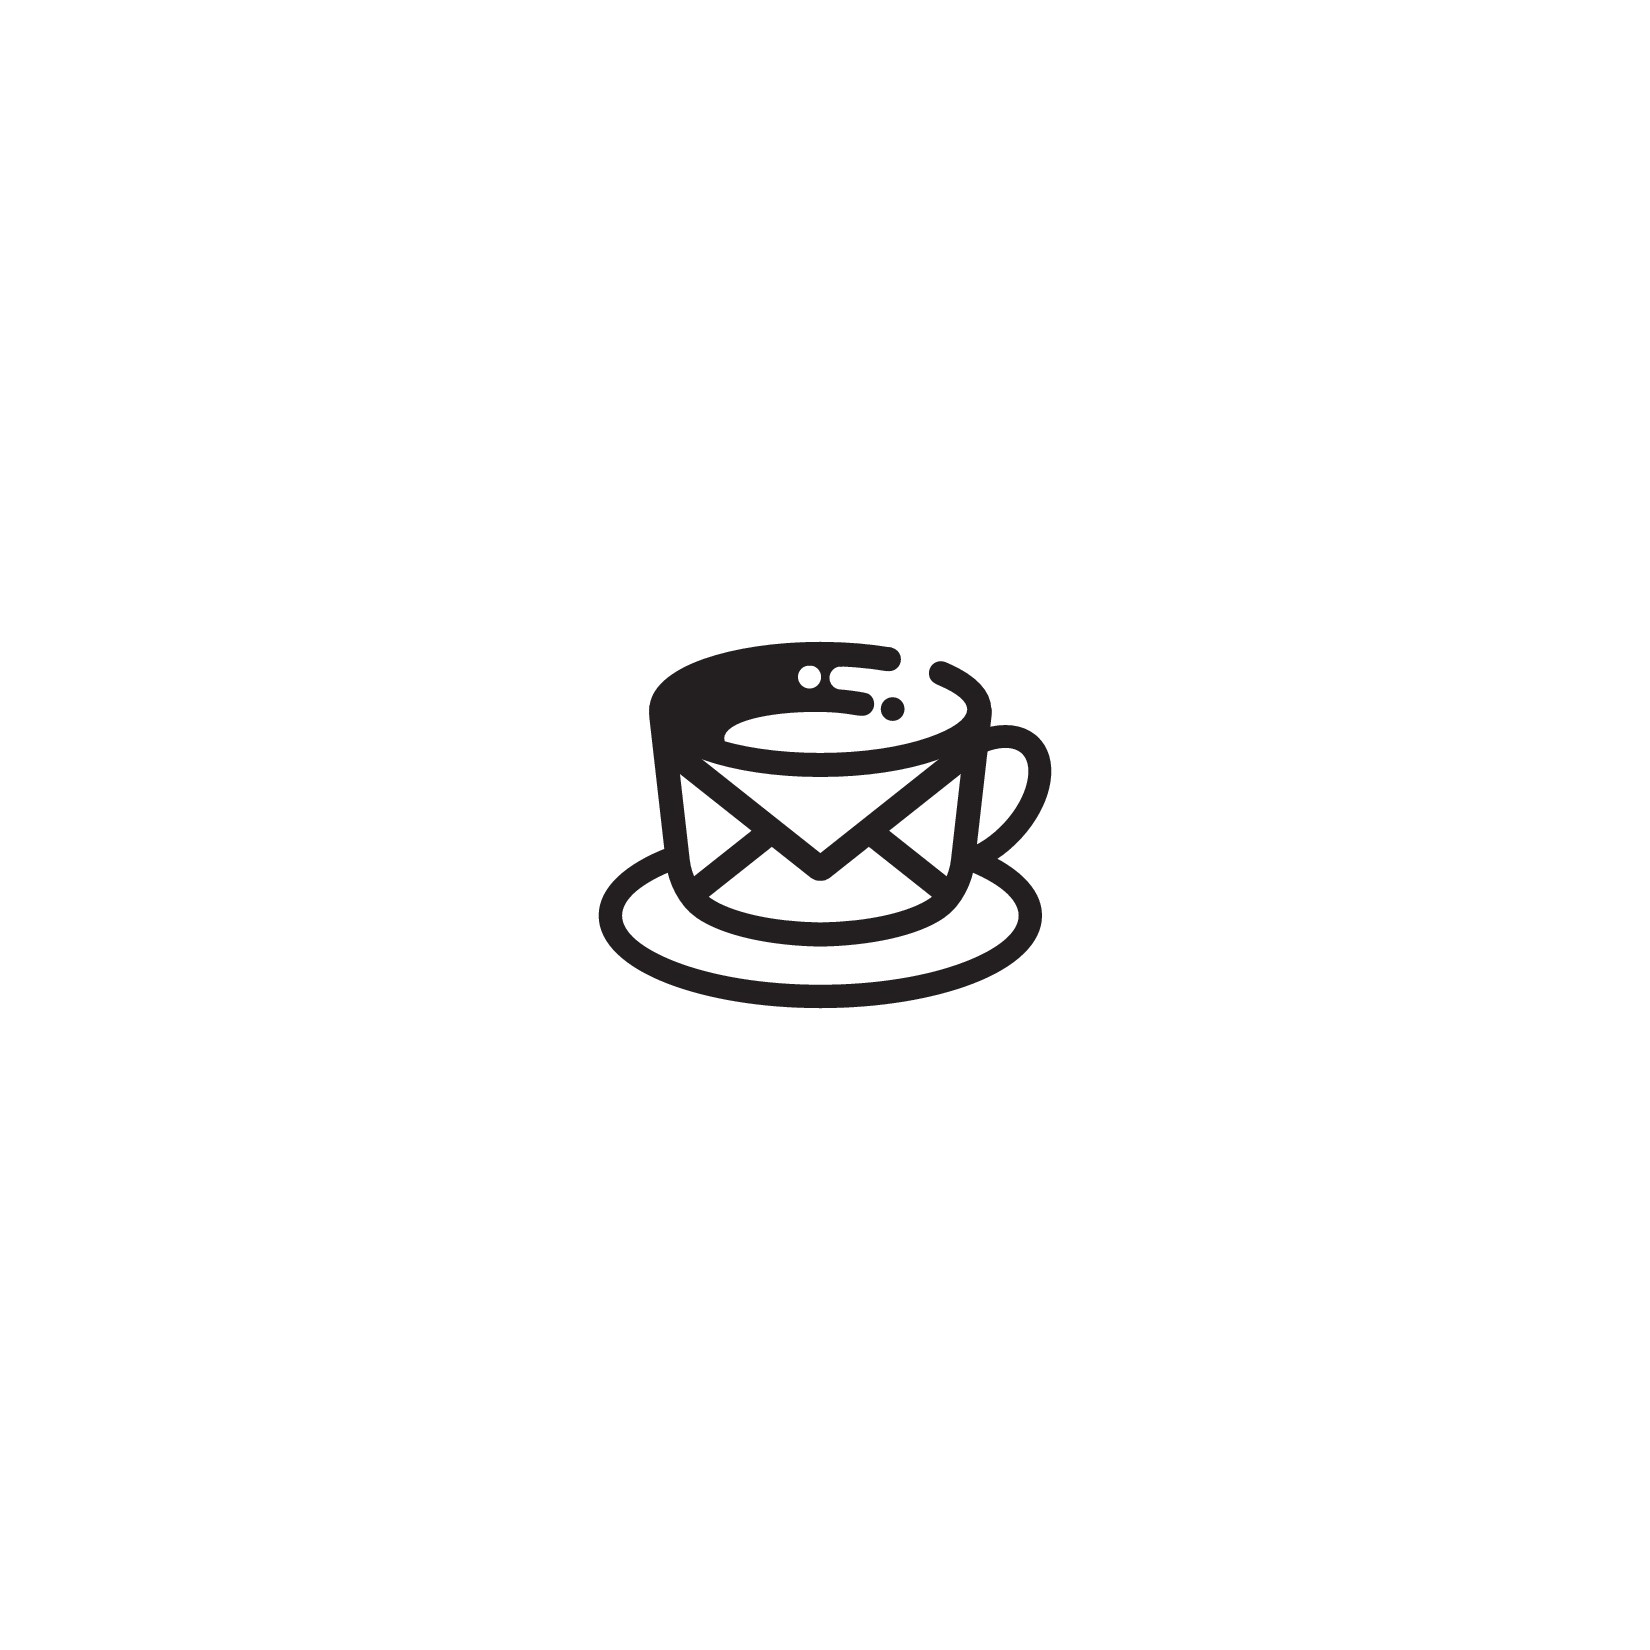 友好的联机咖啡交流项目需要对品牌标识,标签,包装